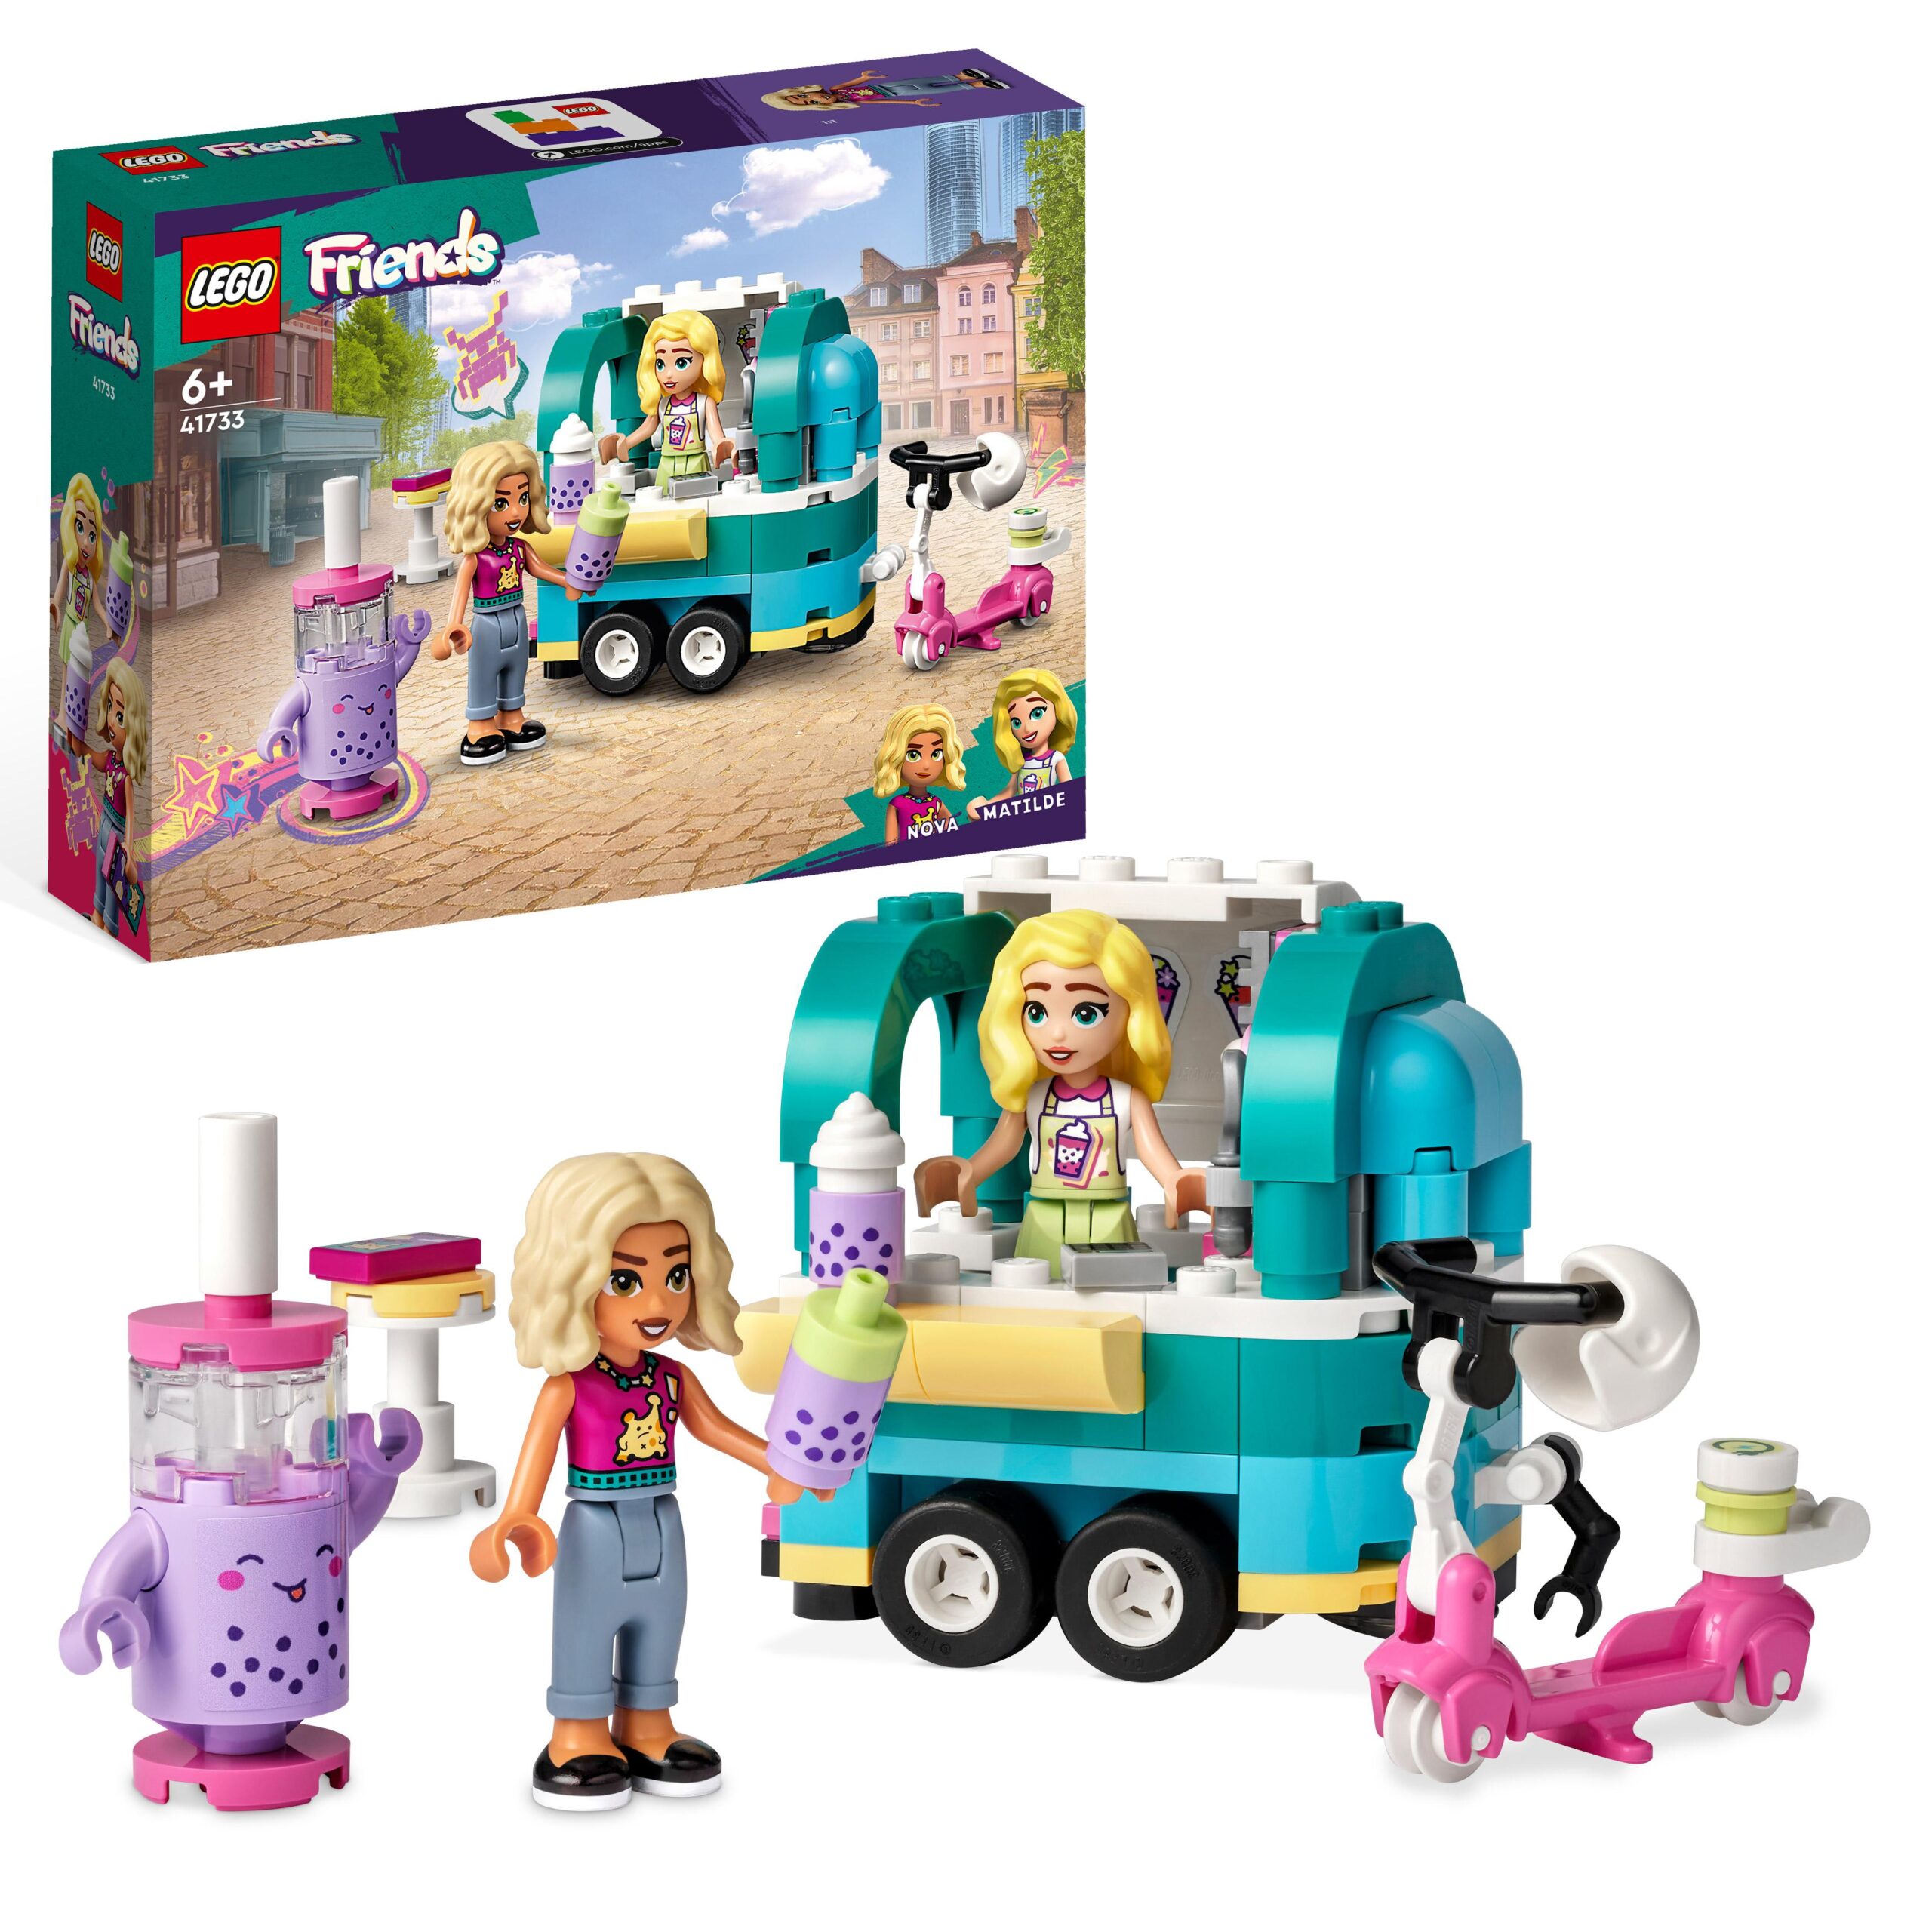 Lego friends 41733 negozio mobile di bubble tea, giocattolo per bambini 6+  con monopattino e mini bamboline nova e matilde - Toys Center